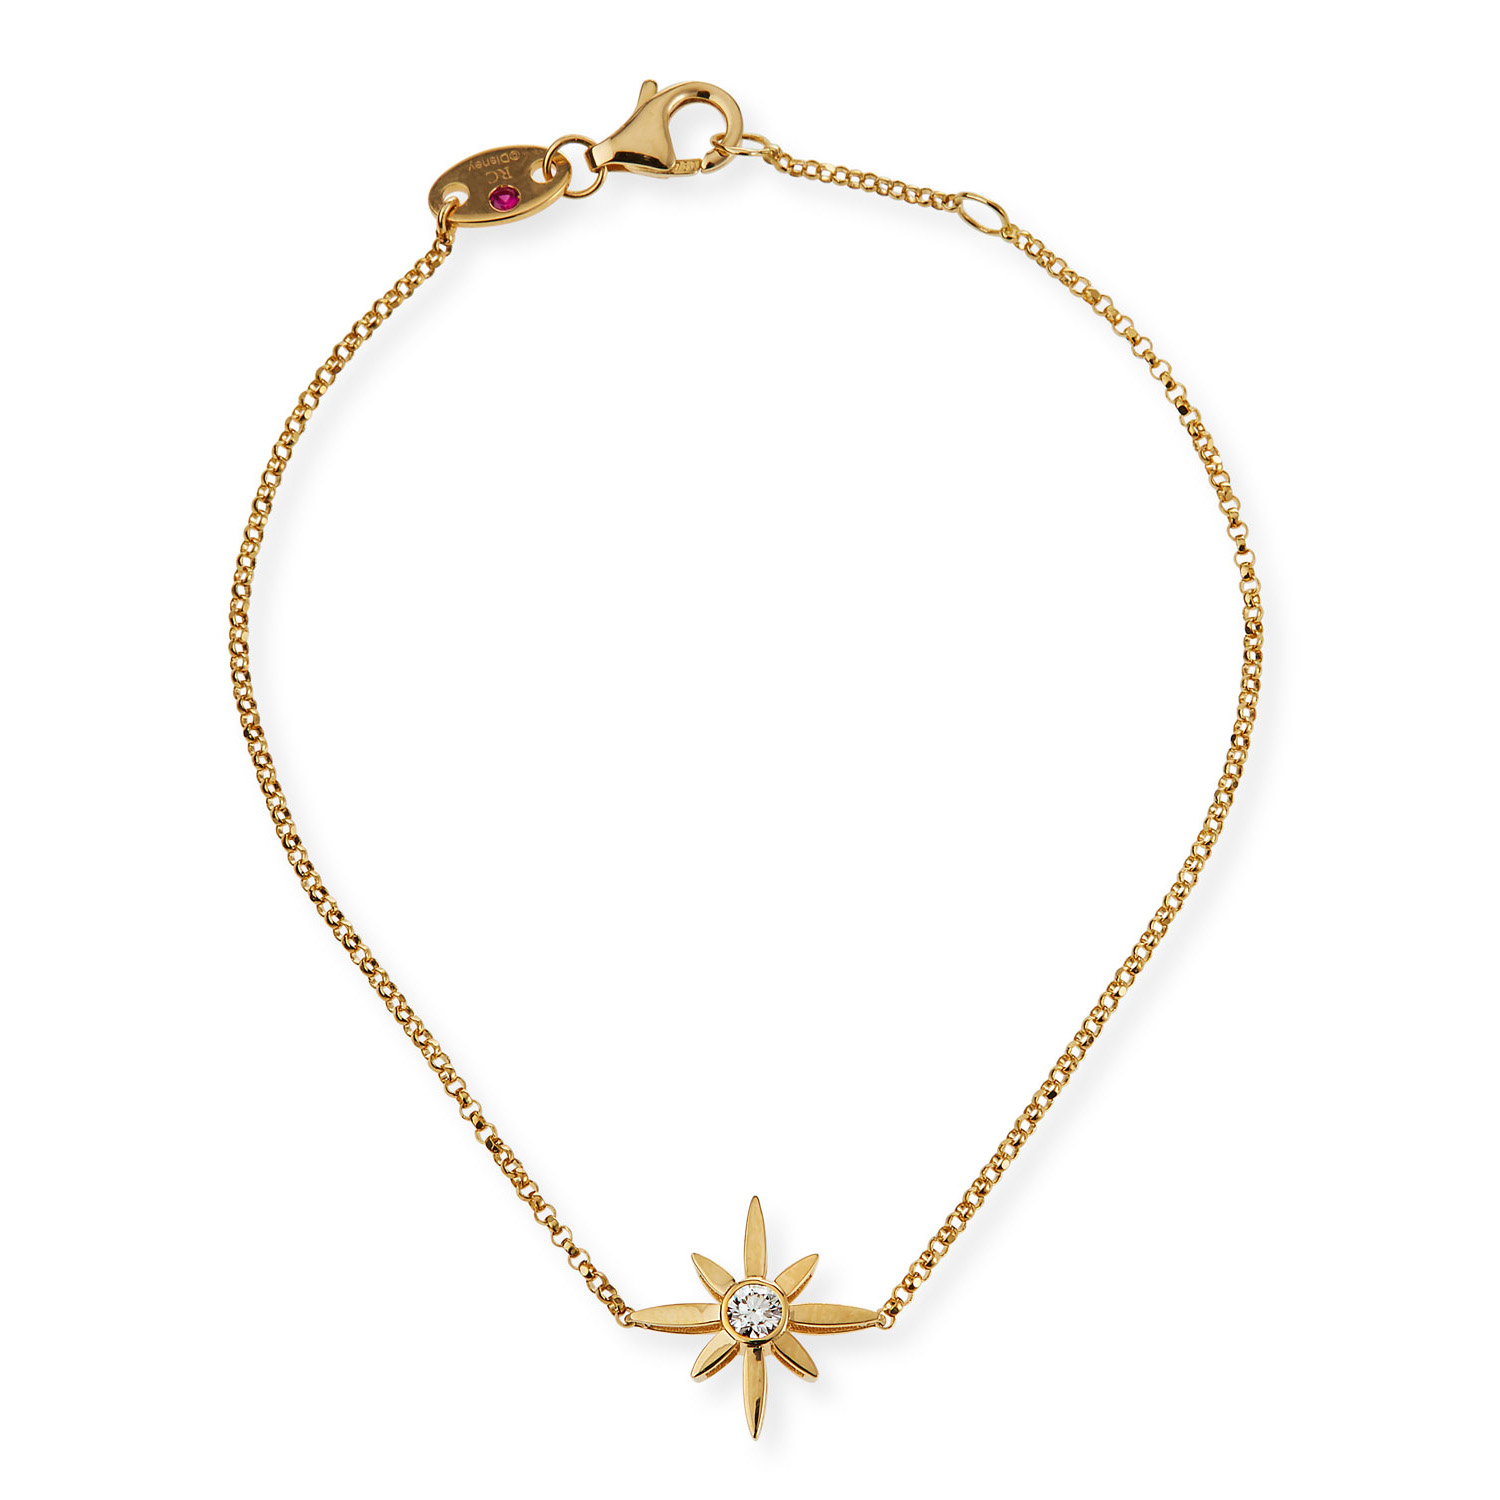 Atacado OEM / ODM joias pulseira de prata estrela personalizada em ouro 18k vermeil design e crie suas próprias joias